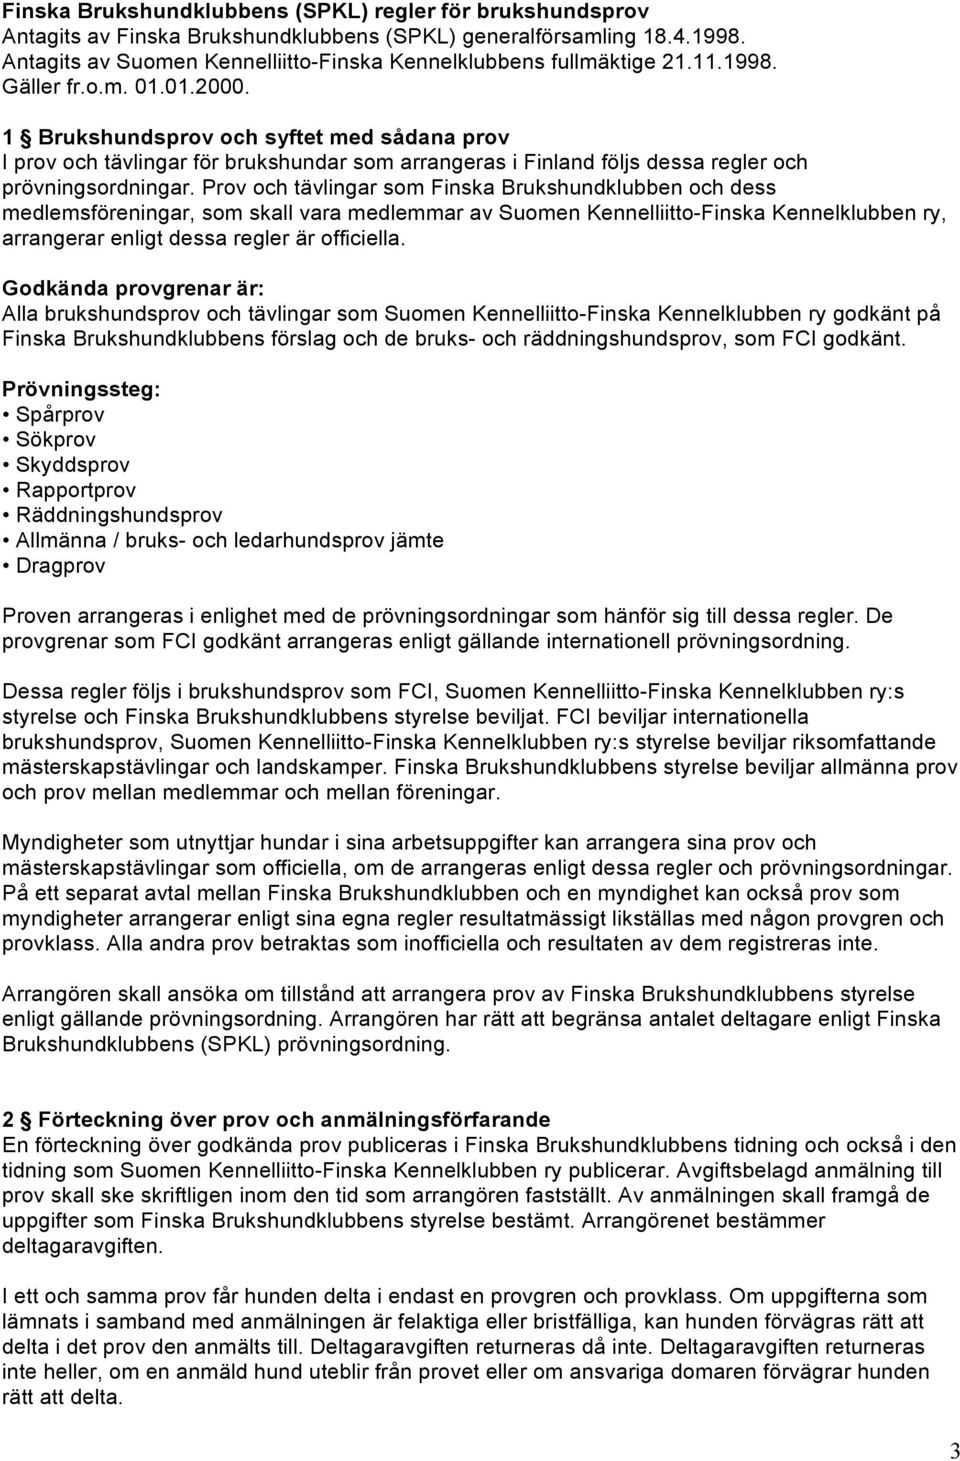 Prov och tävlingar som Finska Brukshundklubben och dess medlemsföreningar, som skall vara medlemmar av Suomen Kennelliitto-Finska Kennelklubben ry, arrangerar enligt dessa regler är officiella.